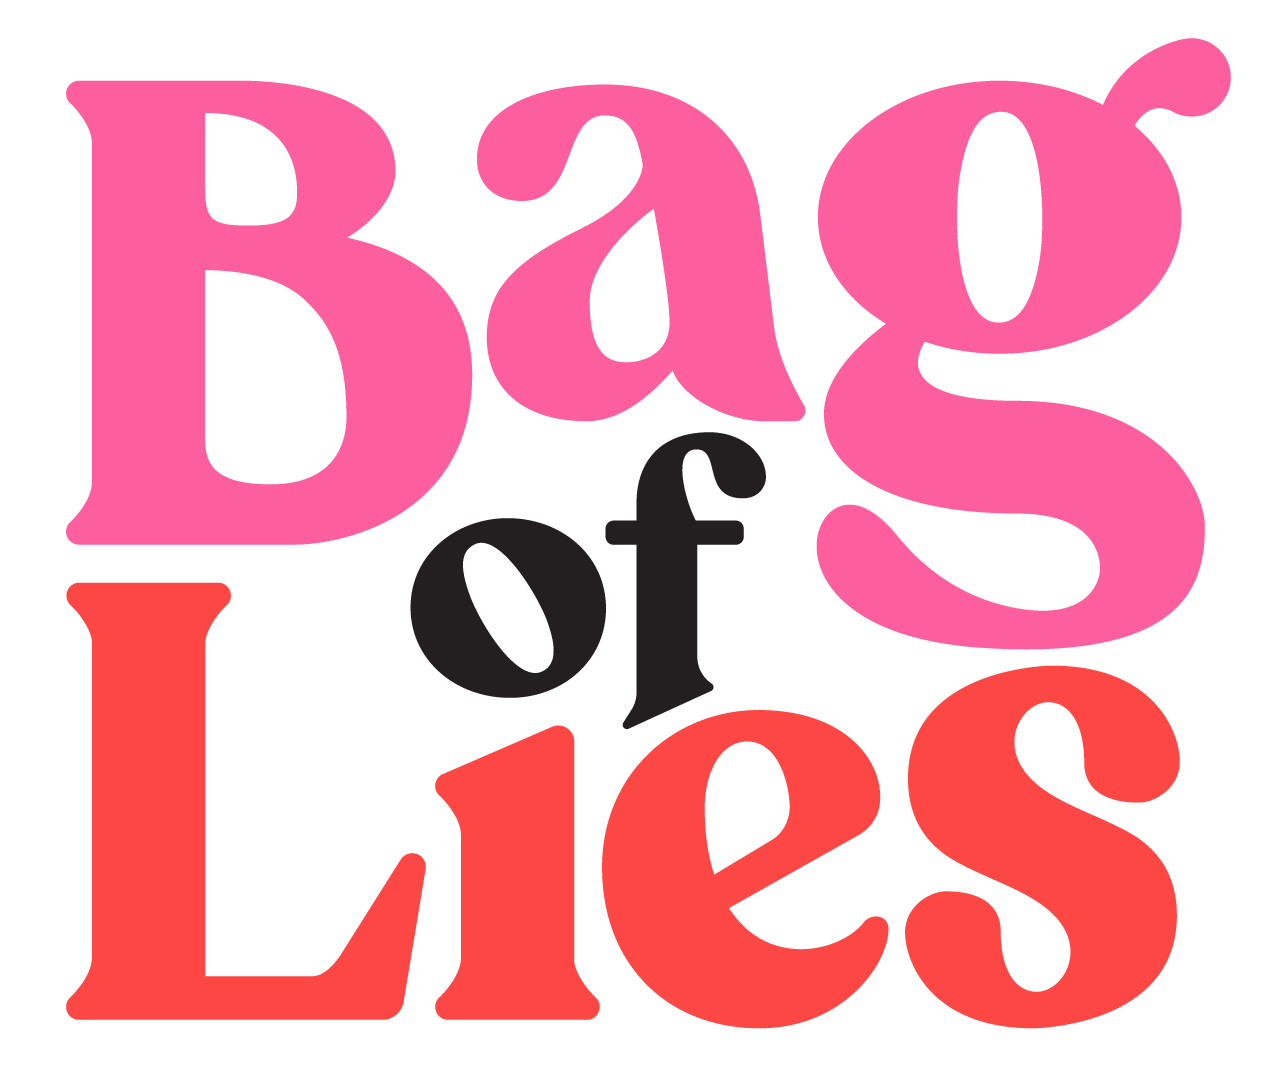 Bag of Lies